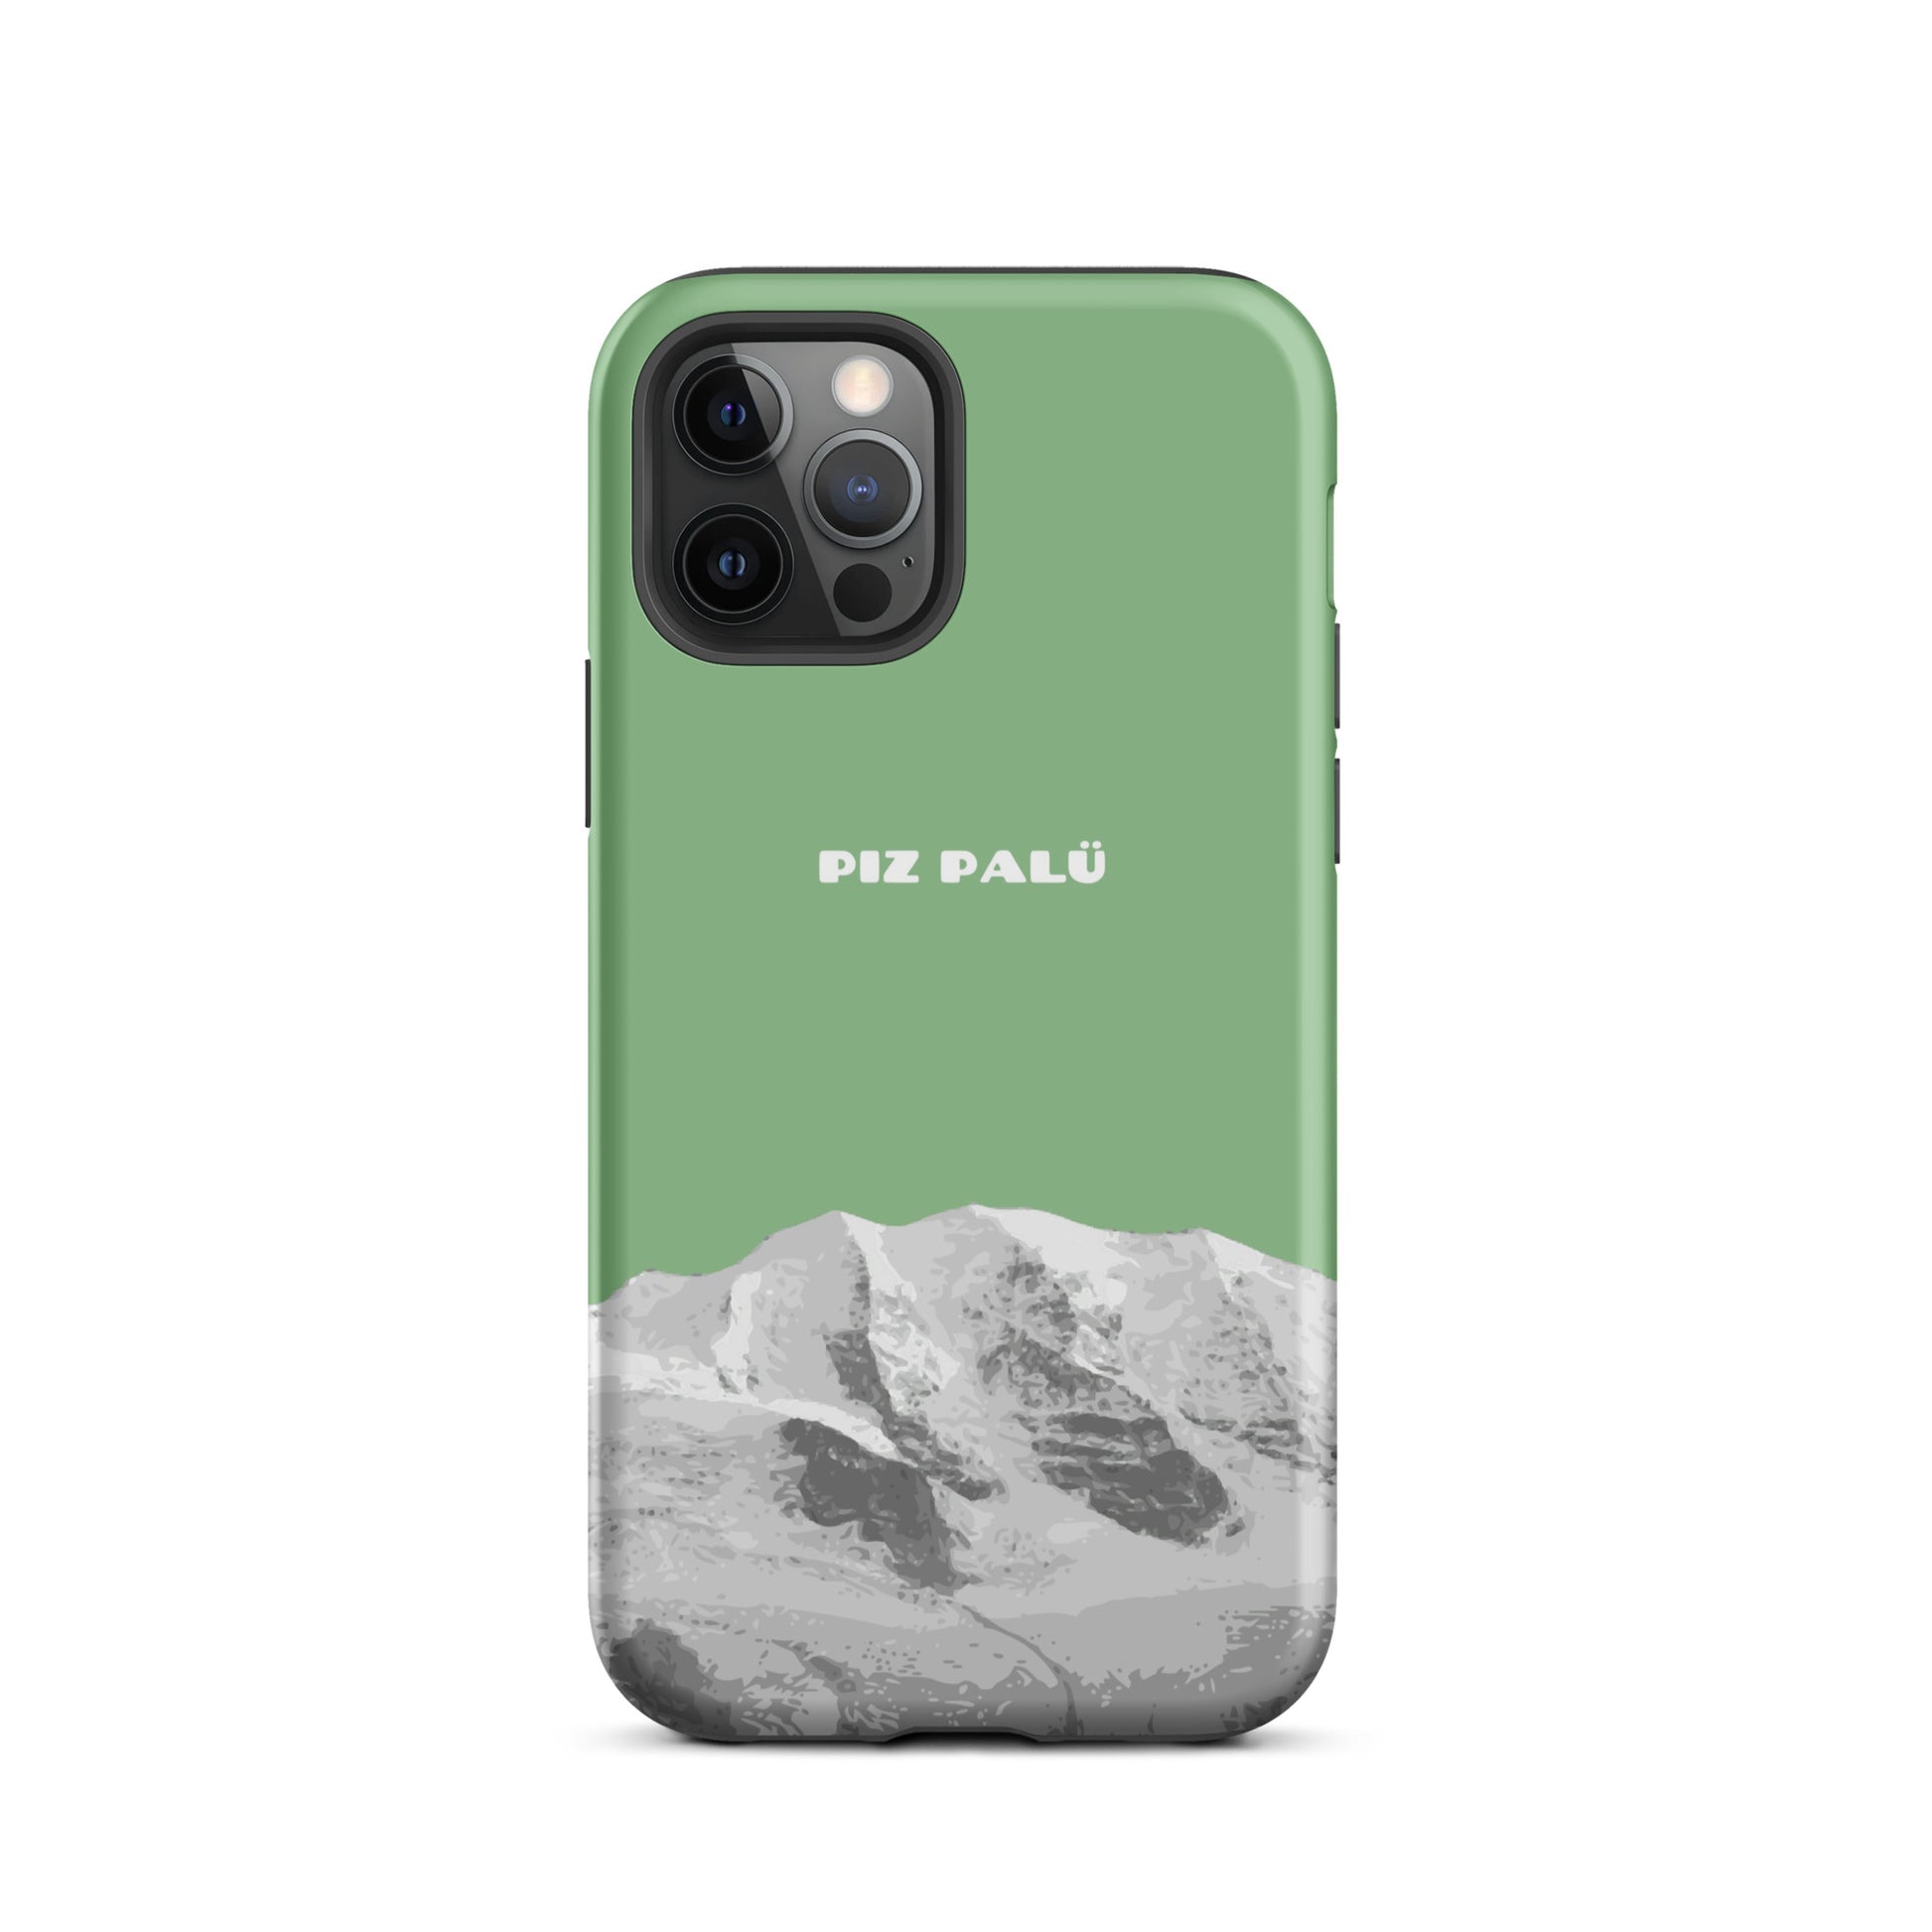 Hülle für das iPhone 12 Pro von Apple in der Farbe Hellgrün, dass den Piz Palü in Graubünden zeigt.